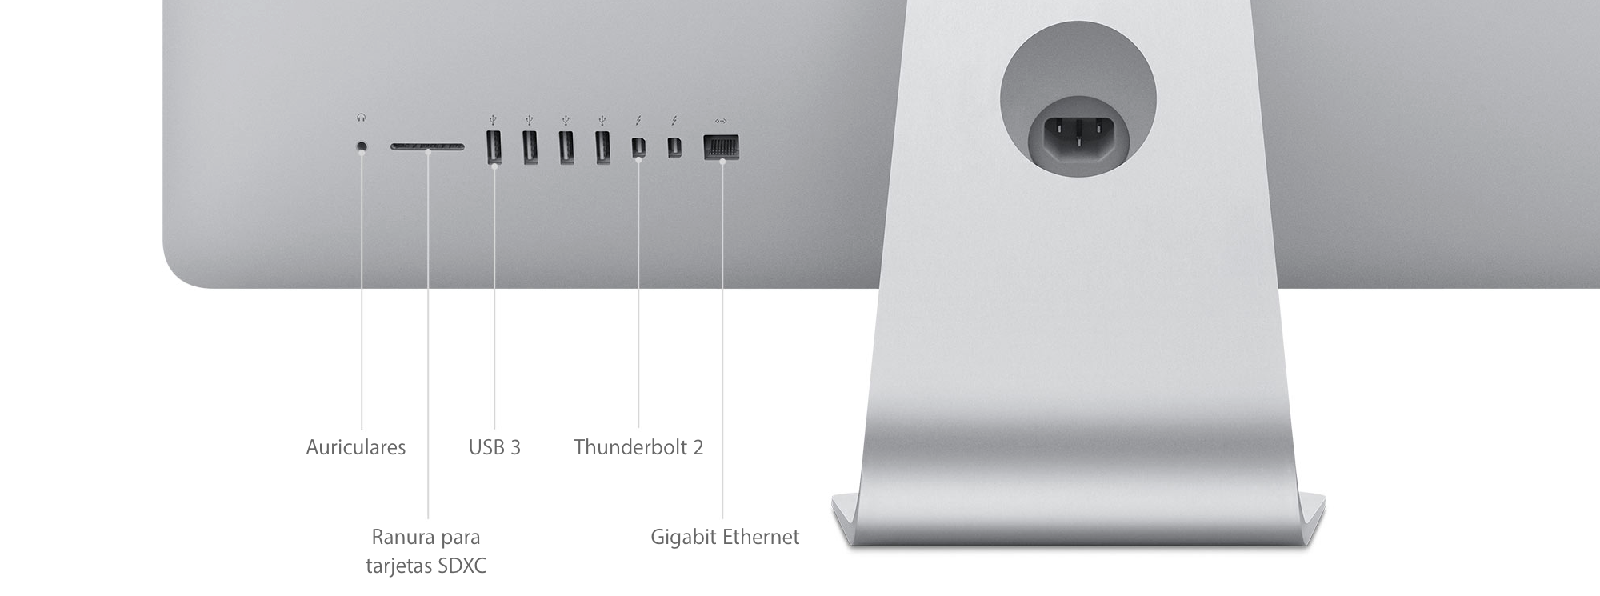 iMac (Retina 5K, 27 pulgadas, finales de 2015) - Especificaciones técnicas  (ES)